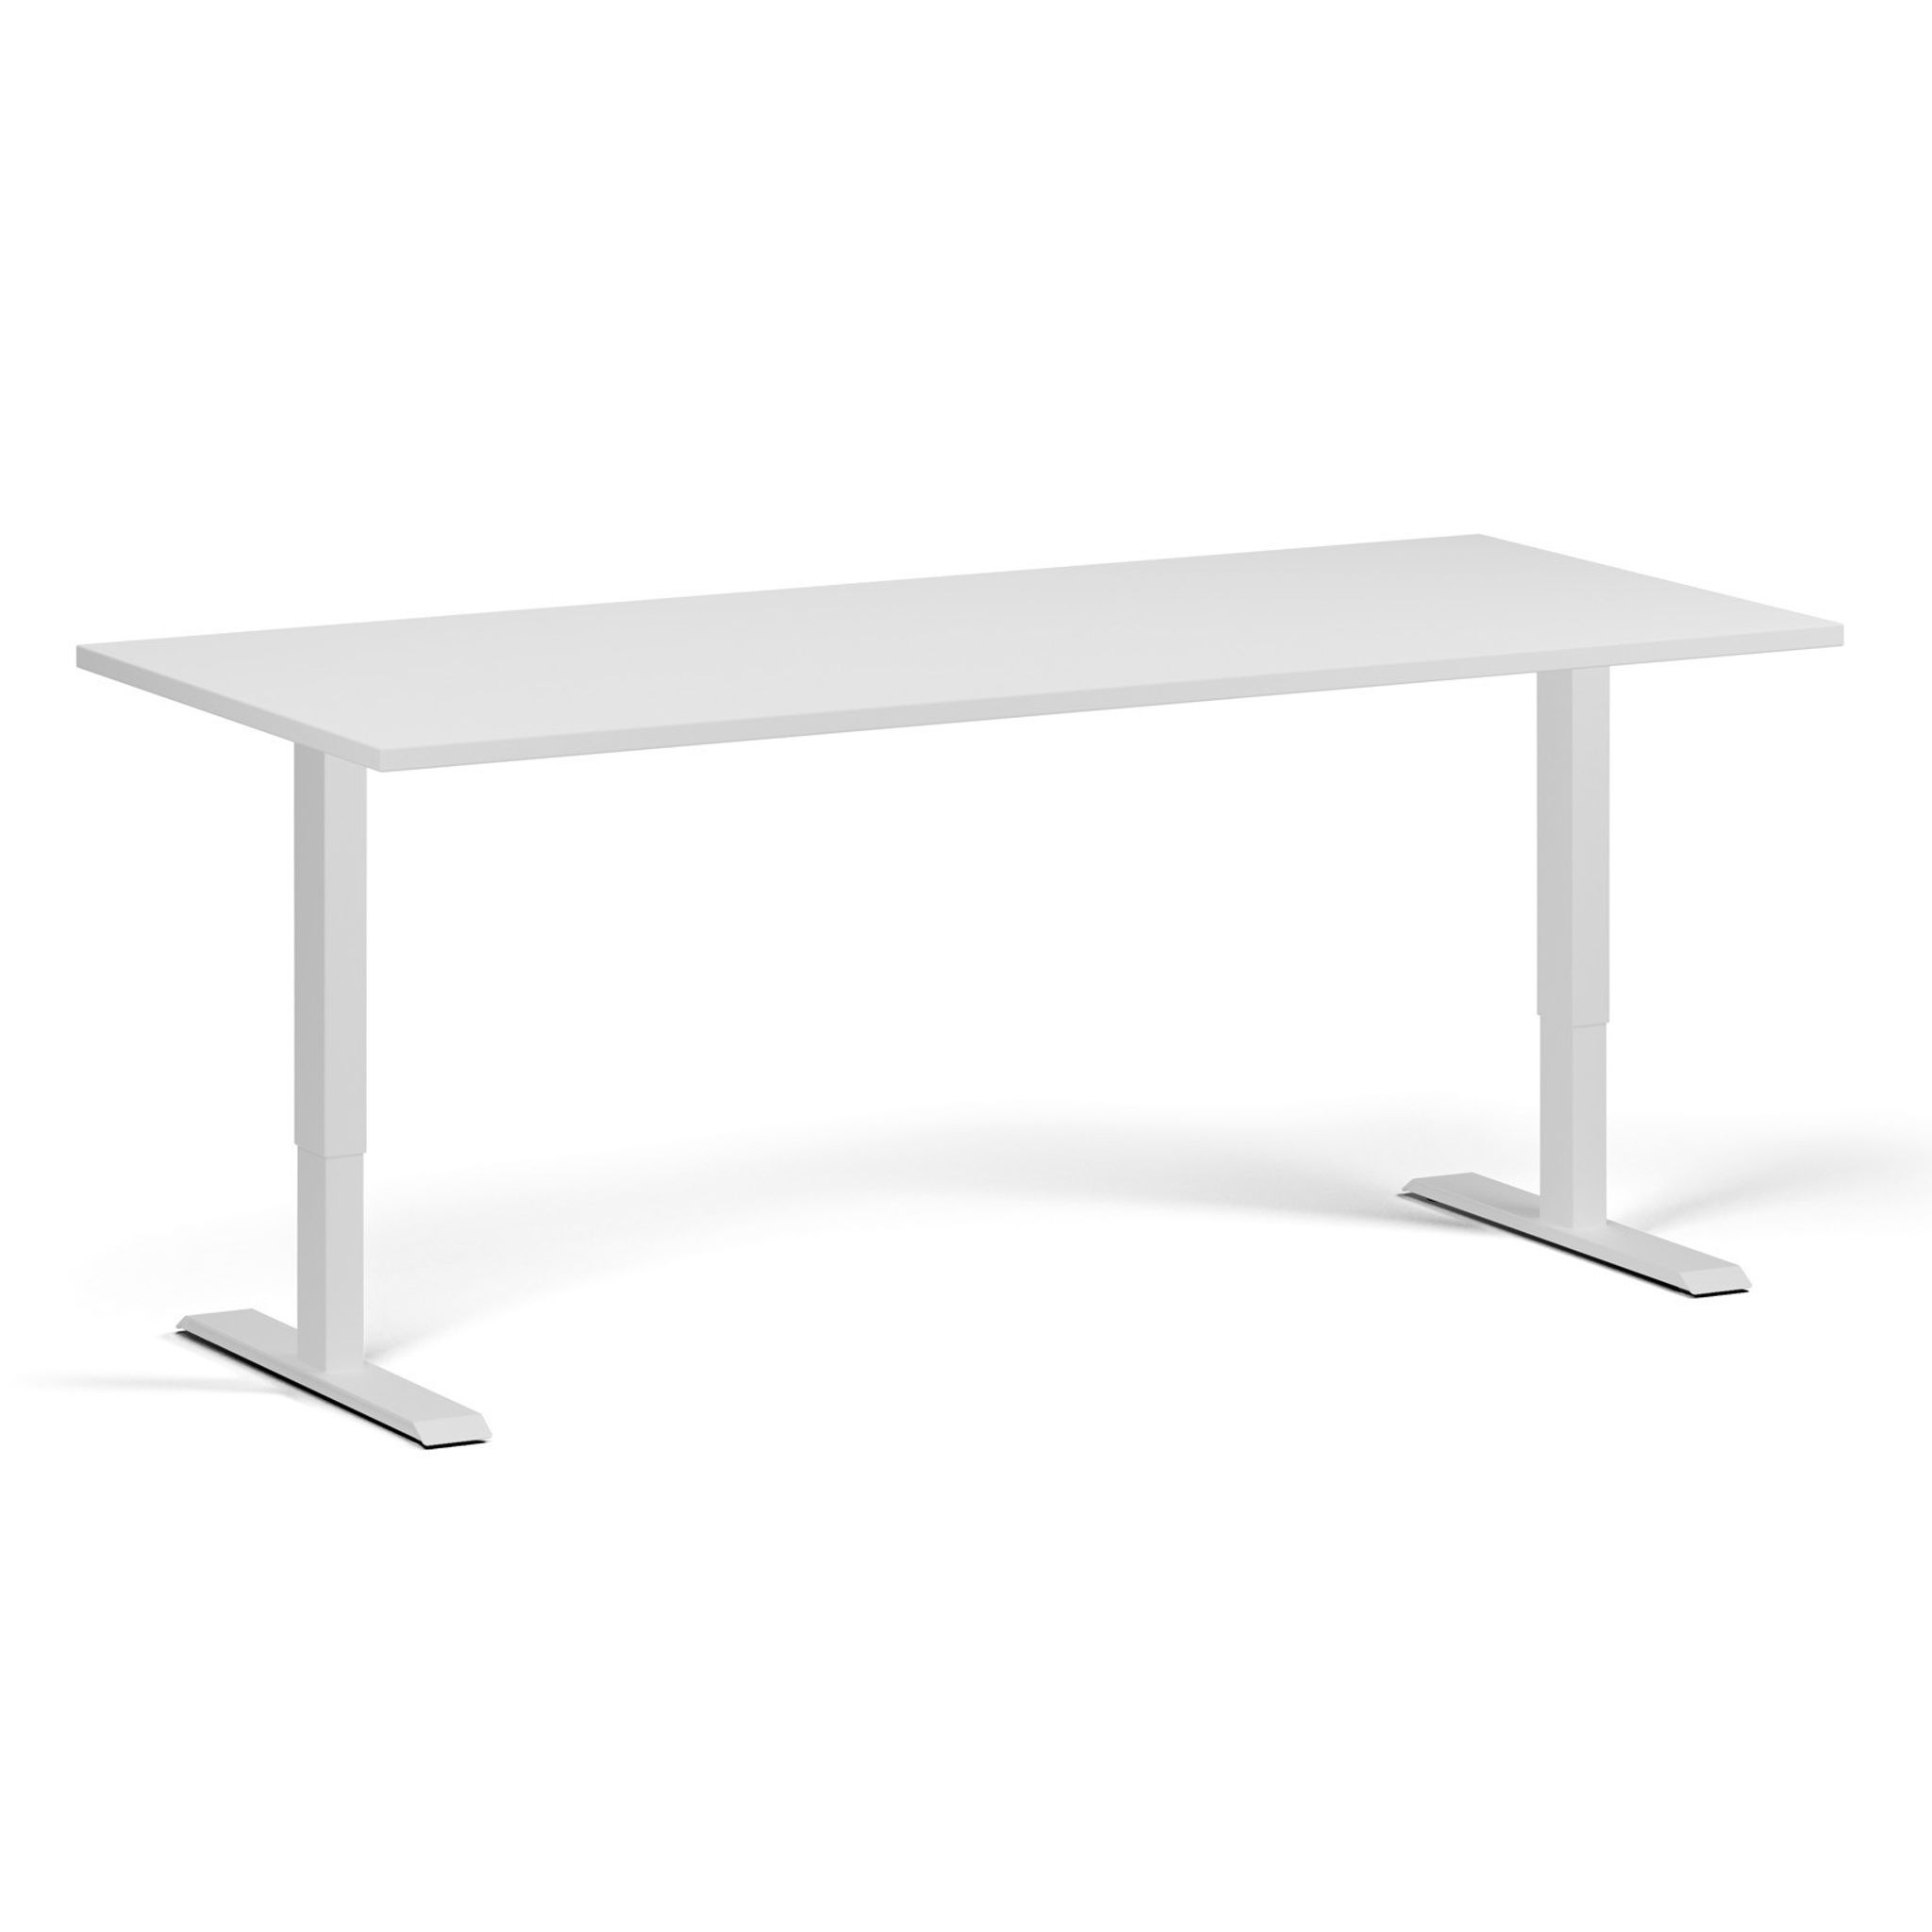 Výškově nastavitelný stůl, 1 motor, 745 - 1235 mm, deska 1800 x 800 mm, bílá podnož, bílá